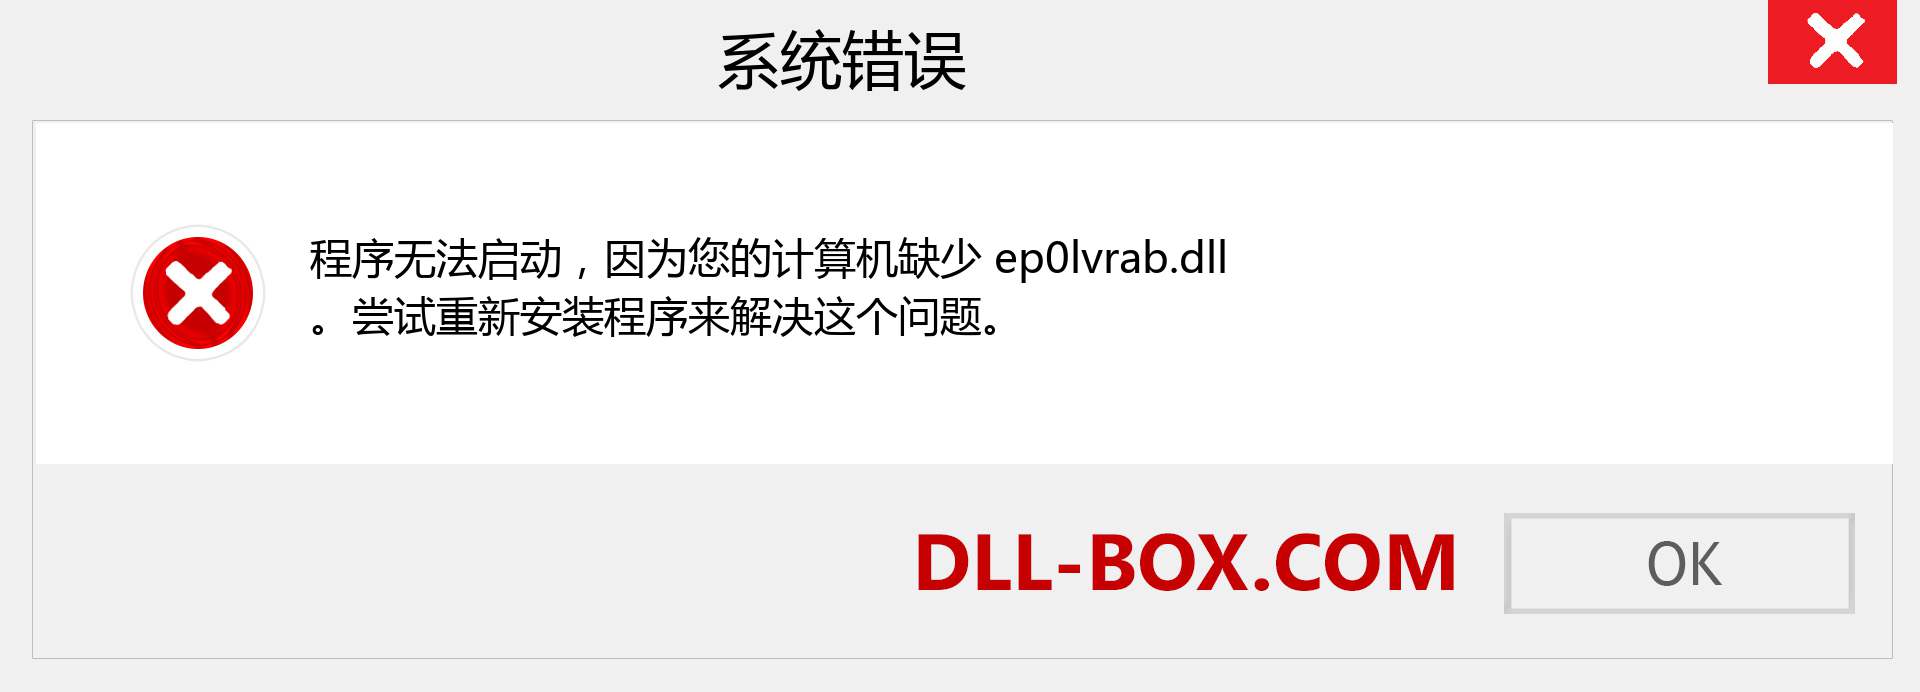 ep0lvrab.dll 文件丢失？。 适用于 Windows 7、8、10 的下载 - 修复 Windows、照片、图像上的 ep0lvrab dll 丢失错误